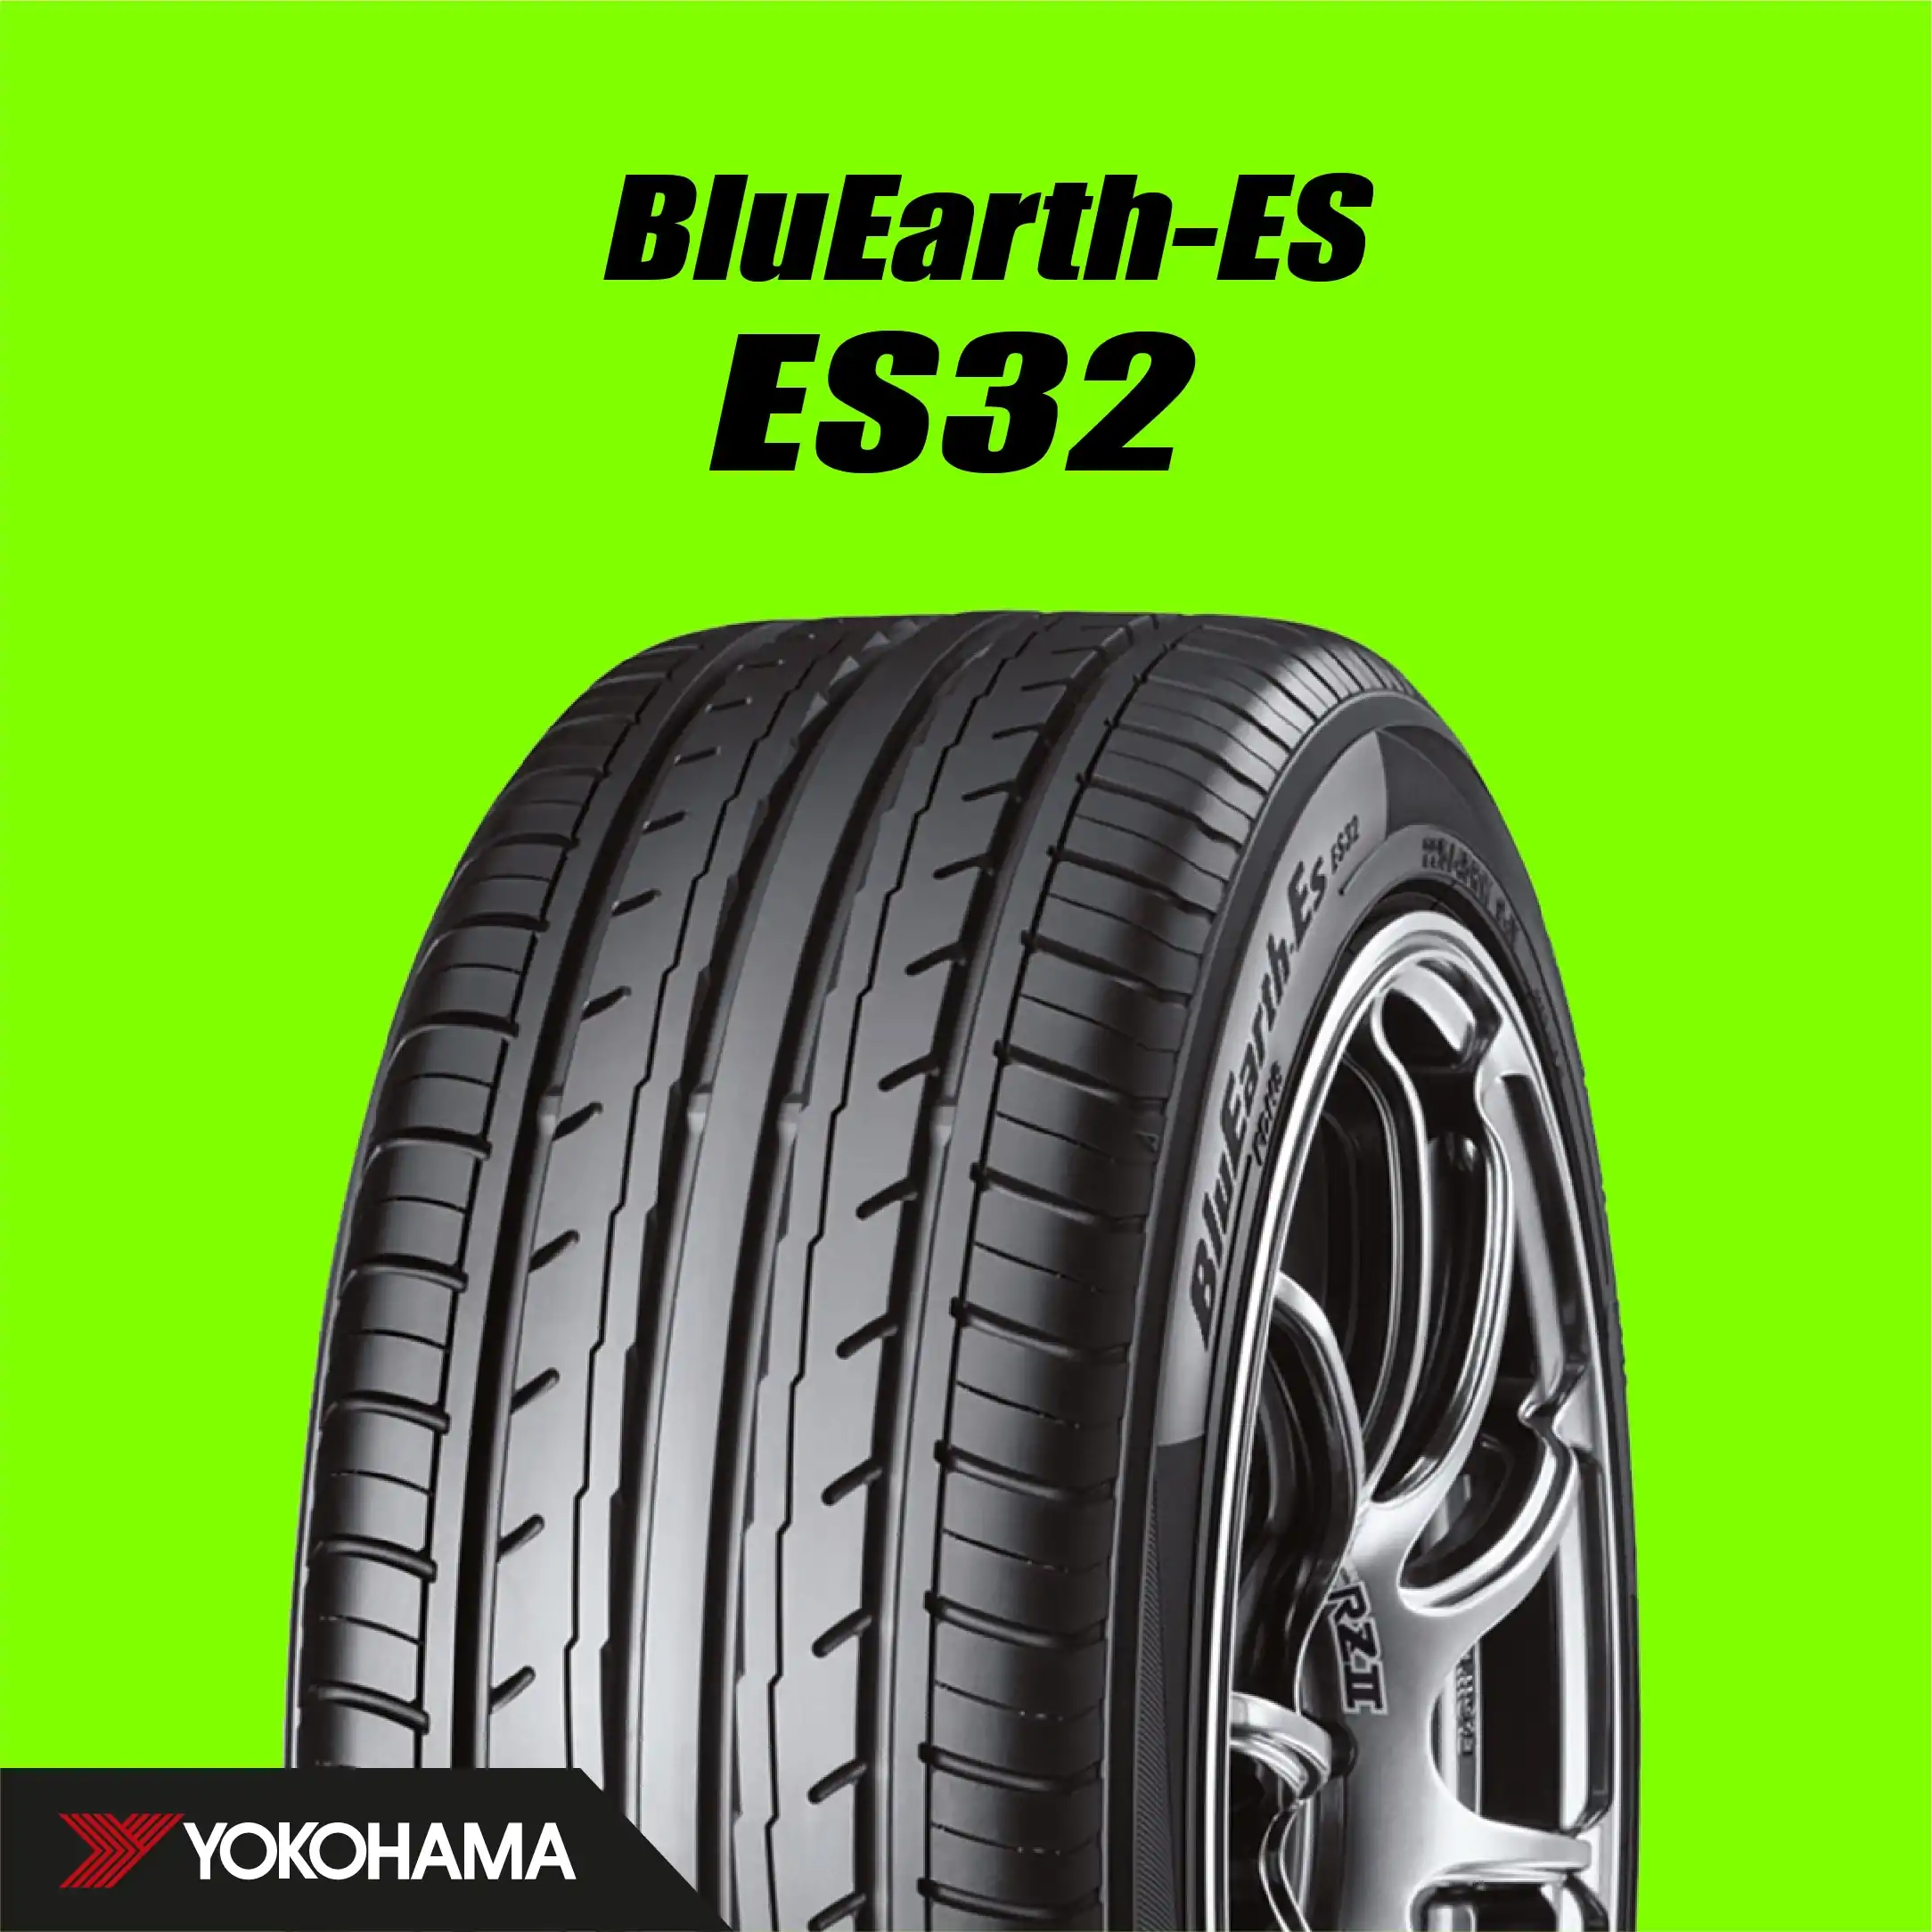 ยาง 205/55R16 YOKOHAMA BluEarth-Es ES32